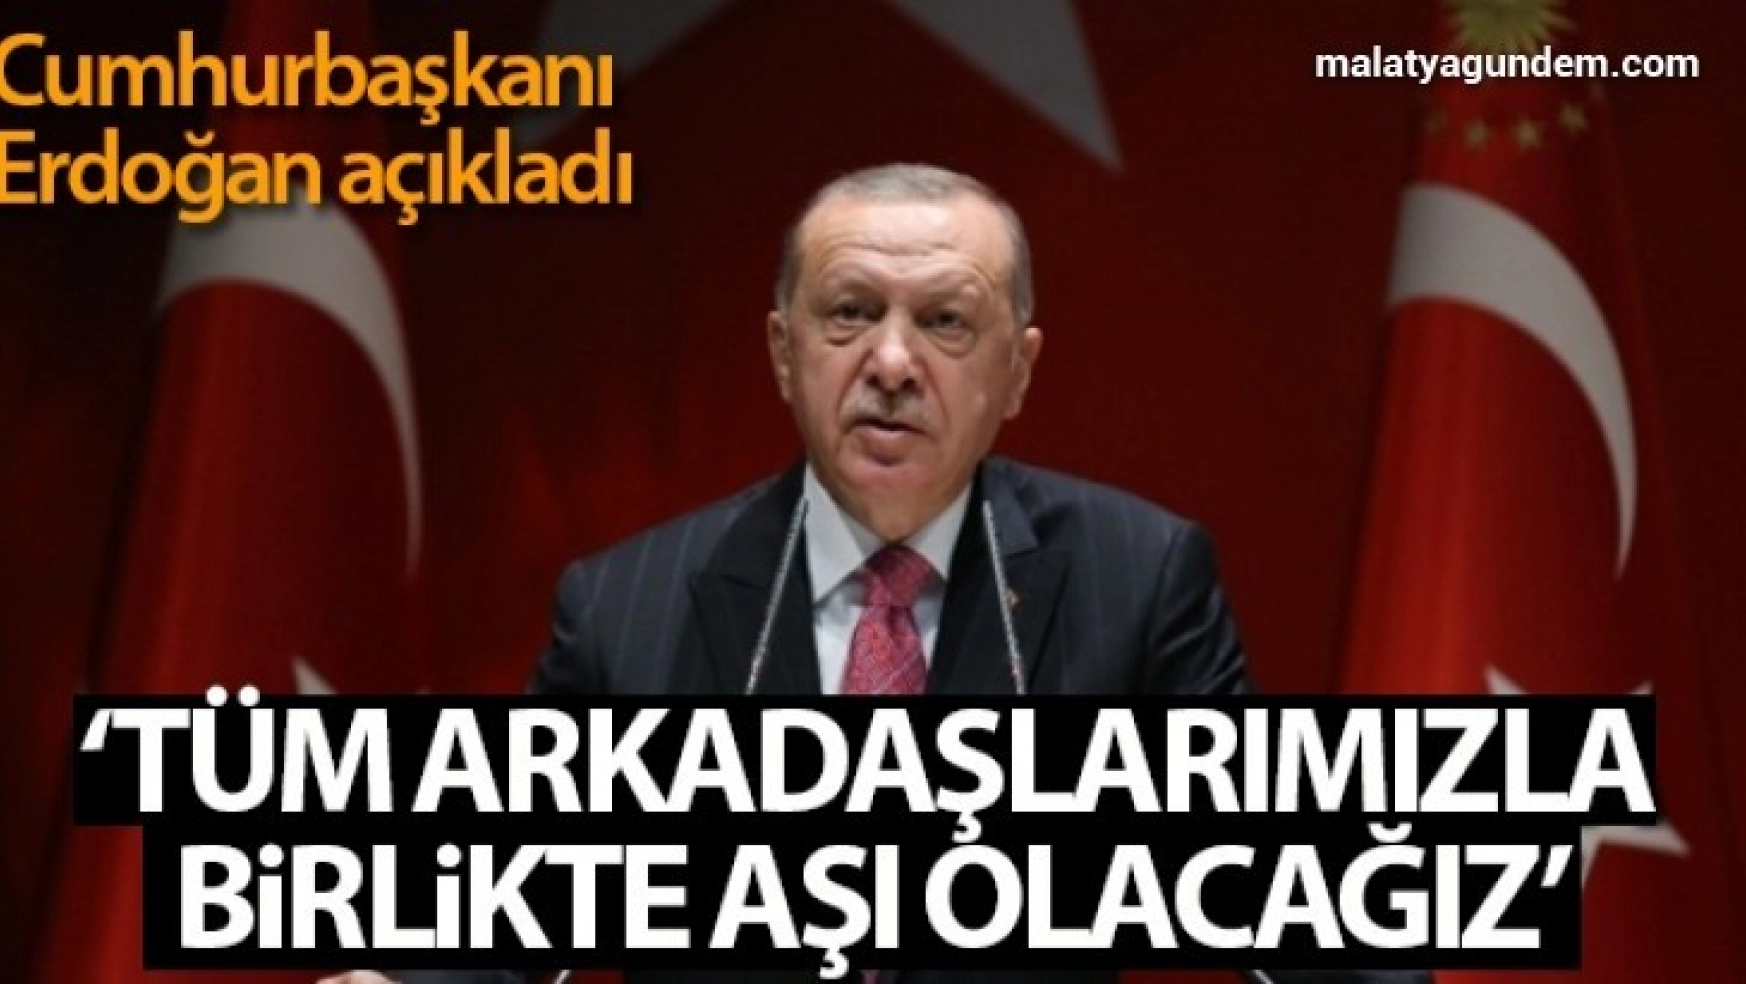 Cumhurbaşkanı Erdoğan: Tüm vatandaşlarımı bu hassasiyete davet ediyorum'